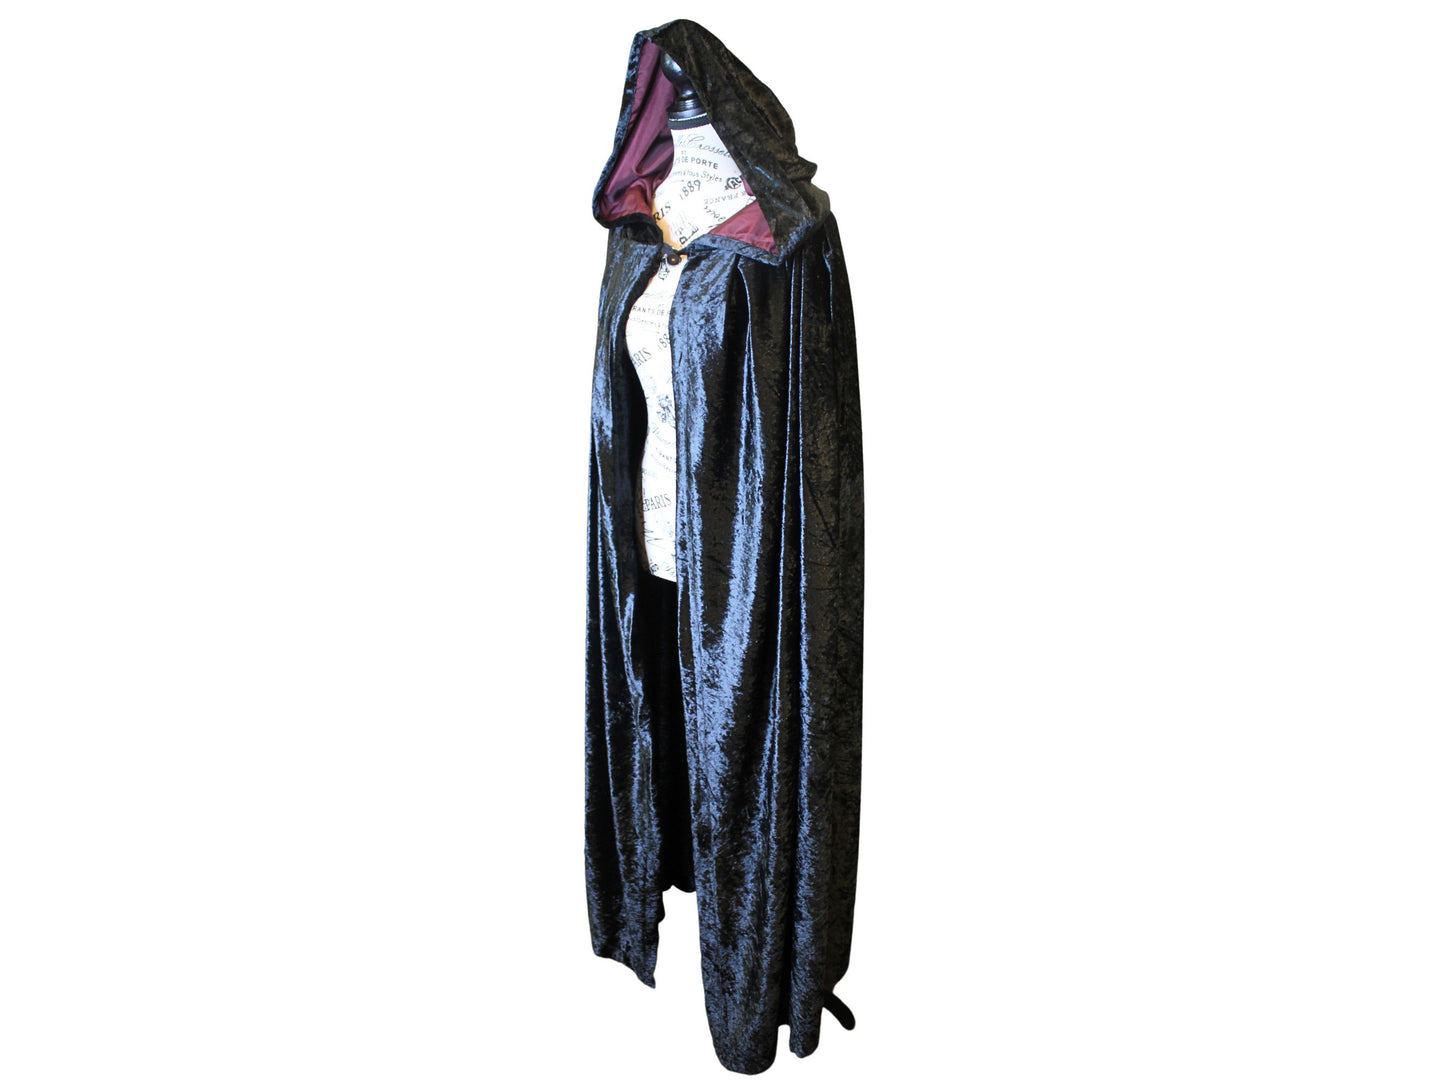 The VM Crushed Velvet Cloak